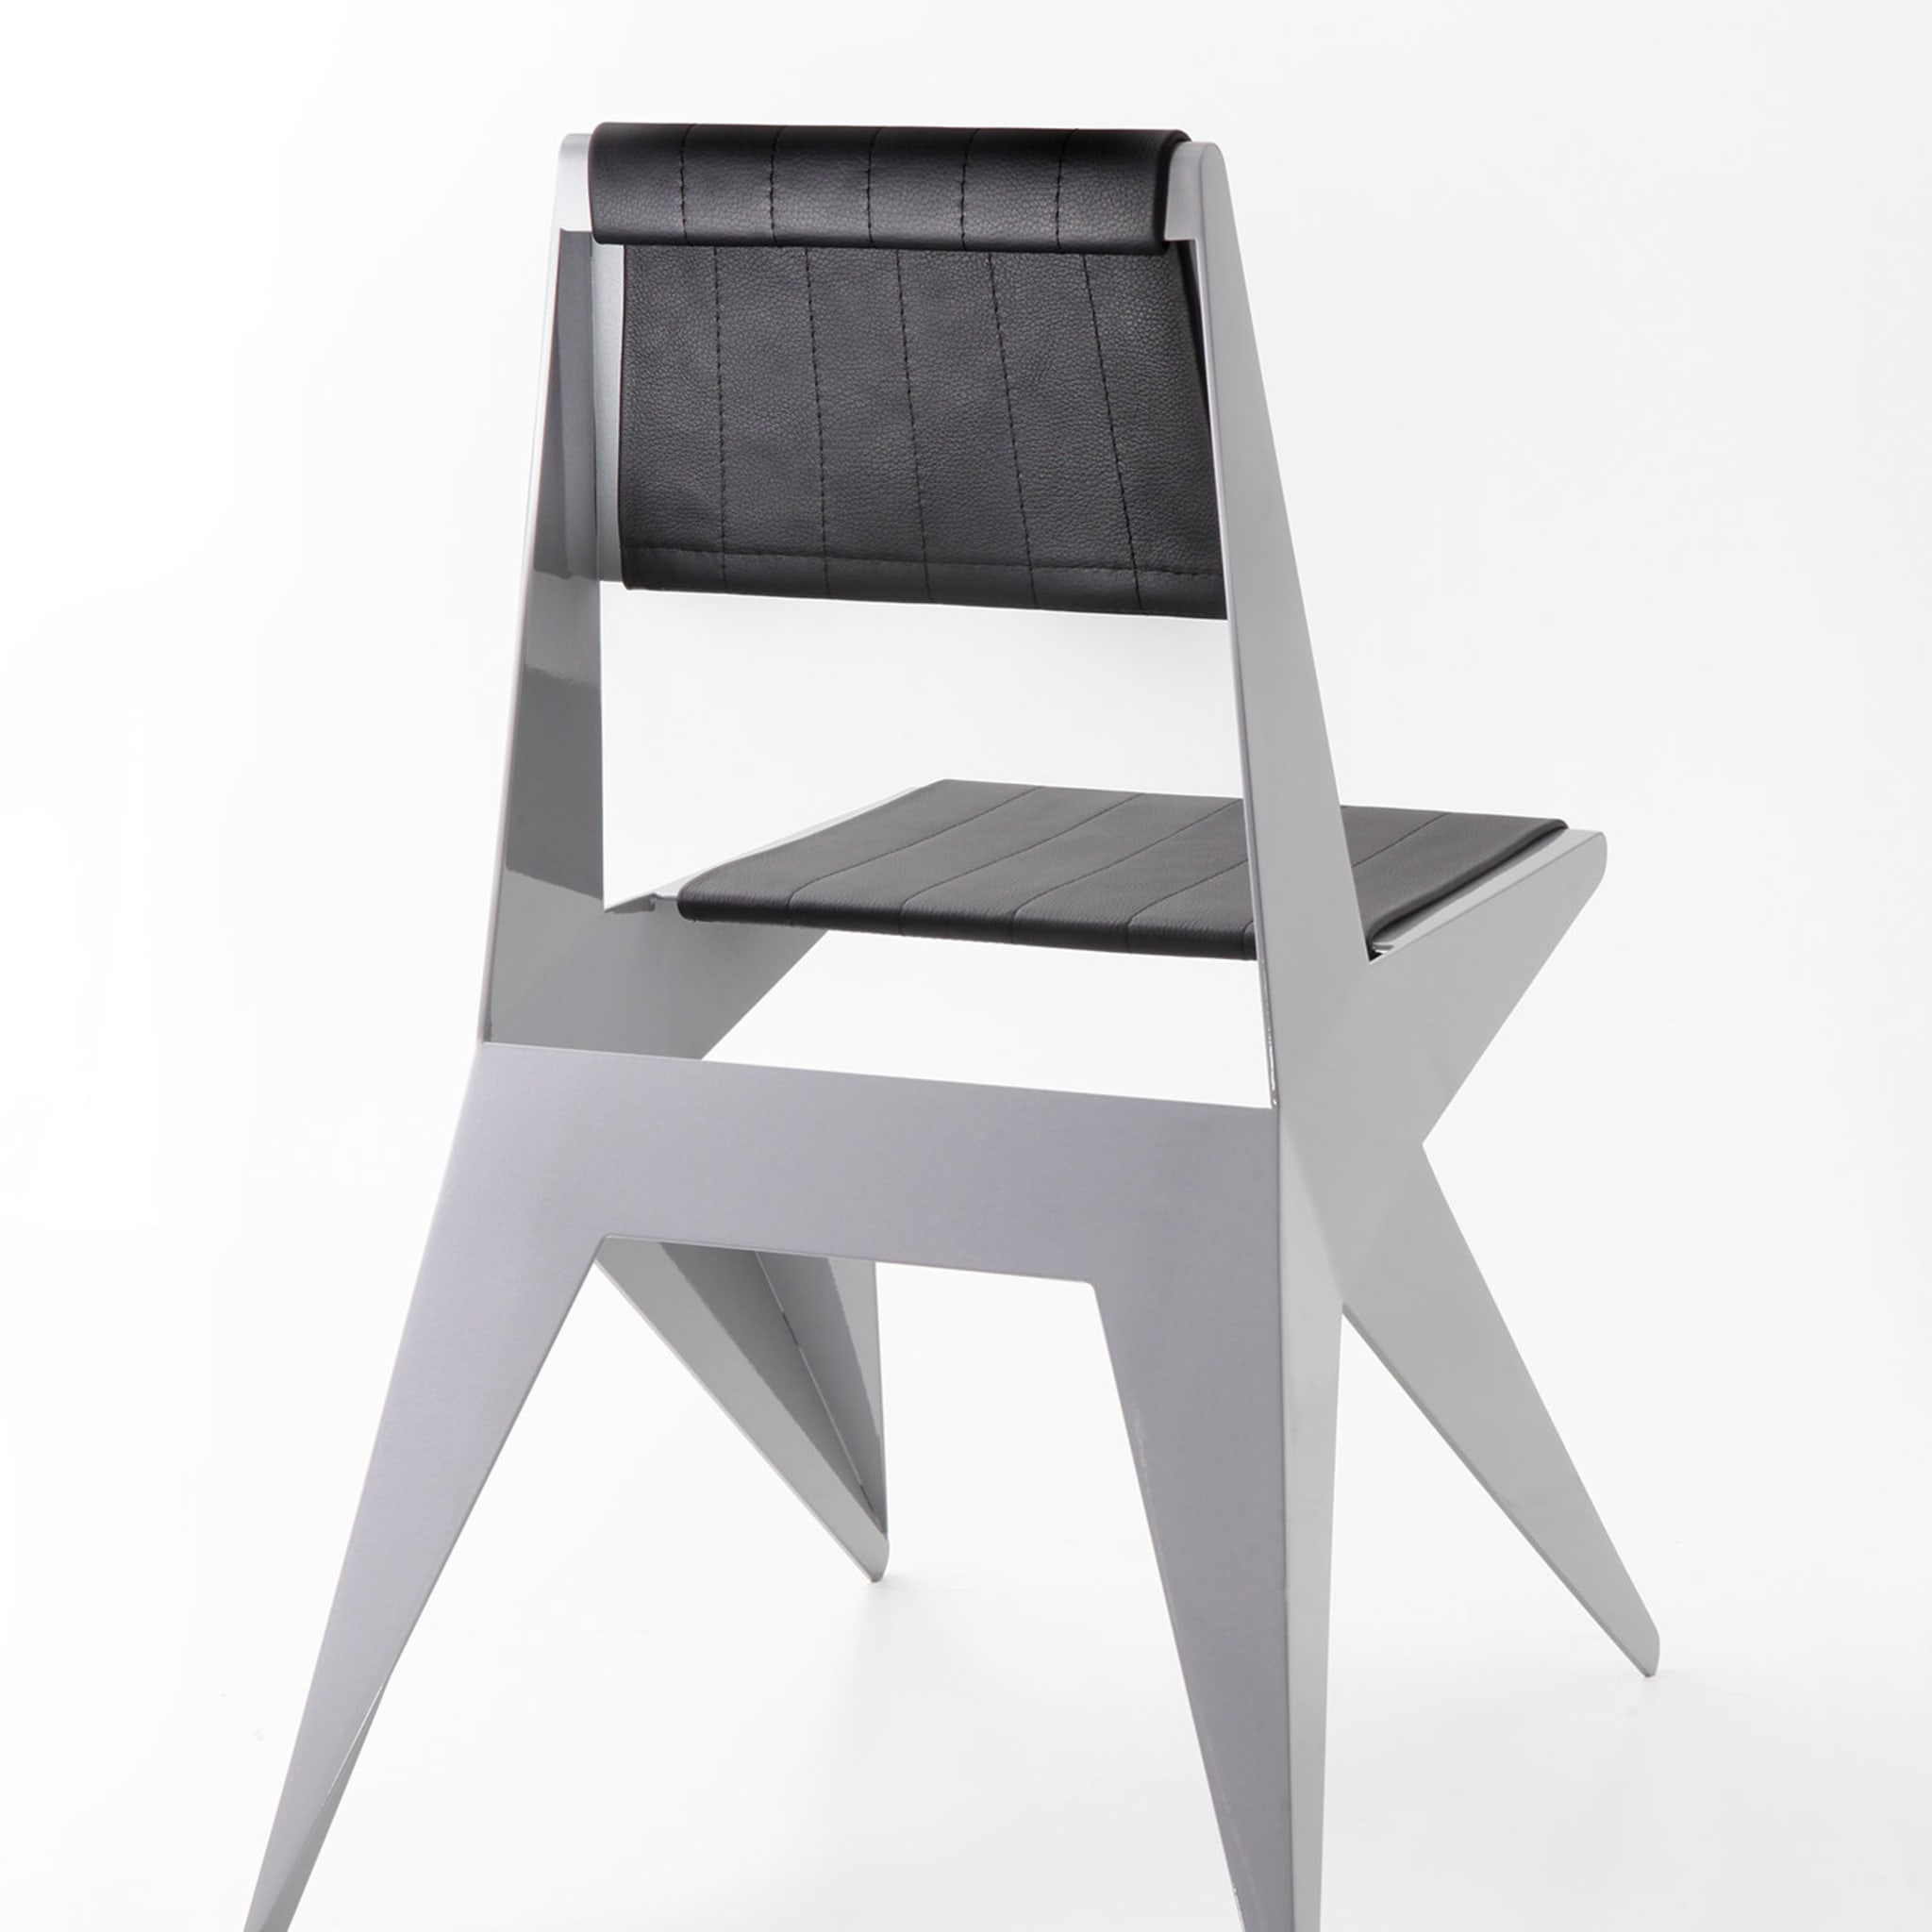 Star Silver Chair by Antonio Pio Saracino - Alternative view 1